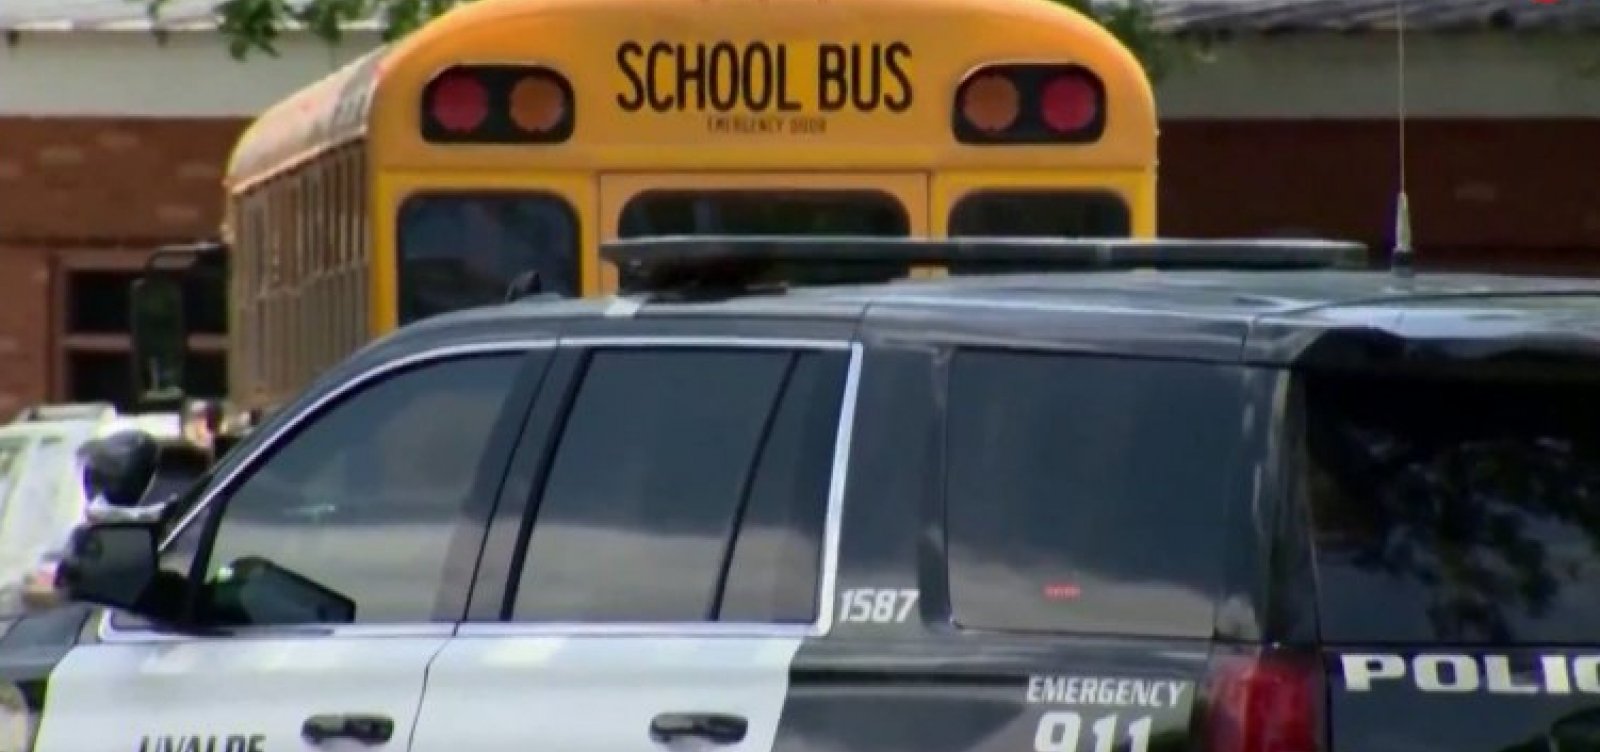 Atirador mata 19 estudantes e dois professores em escola primária no Texas